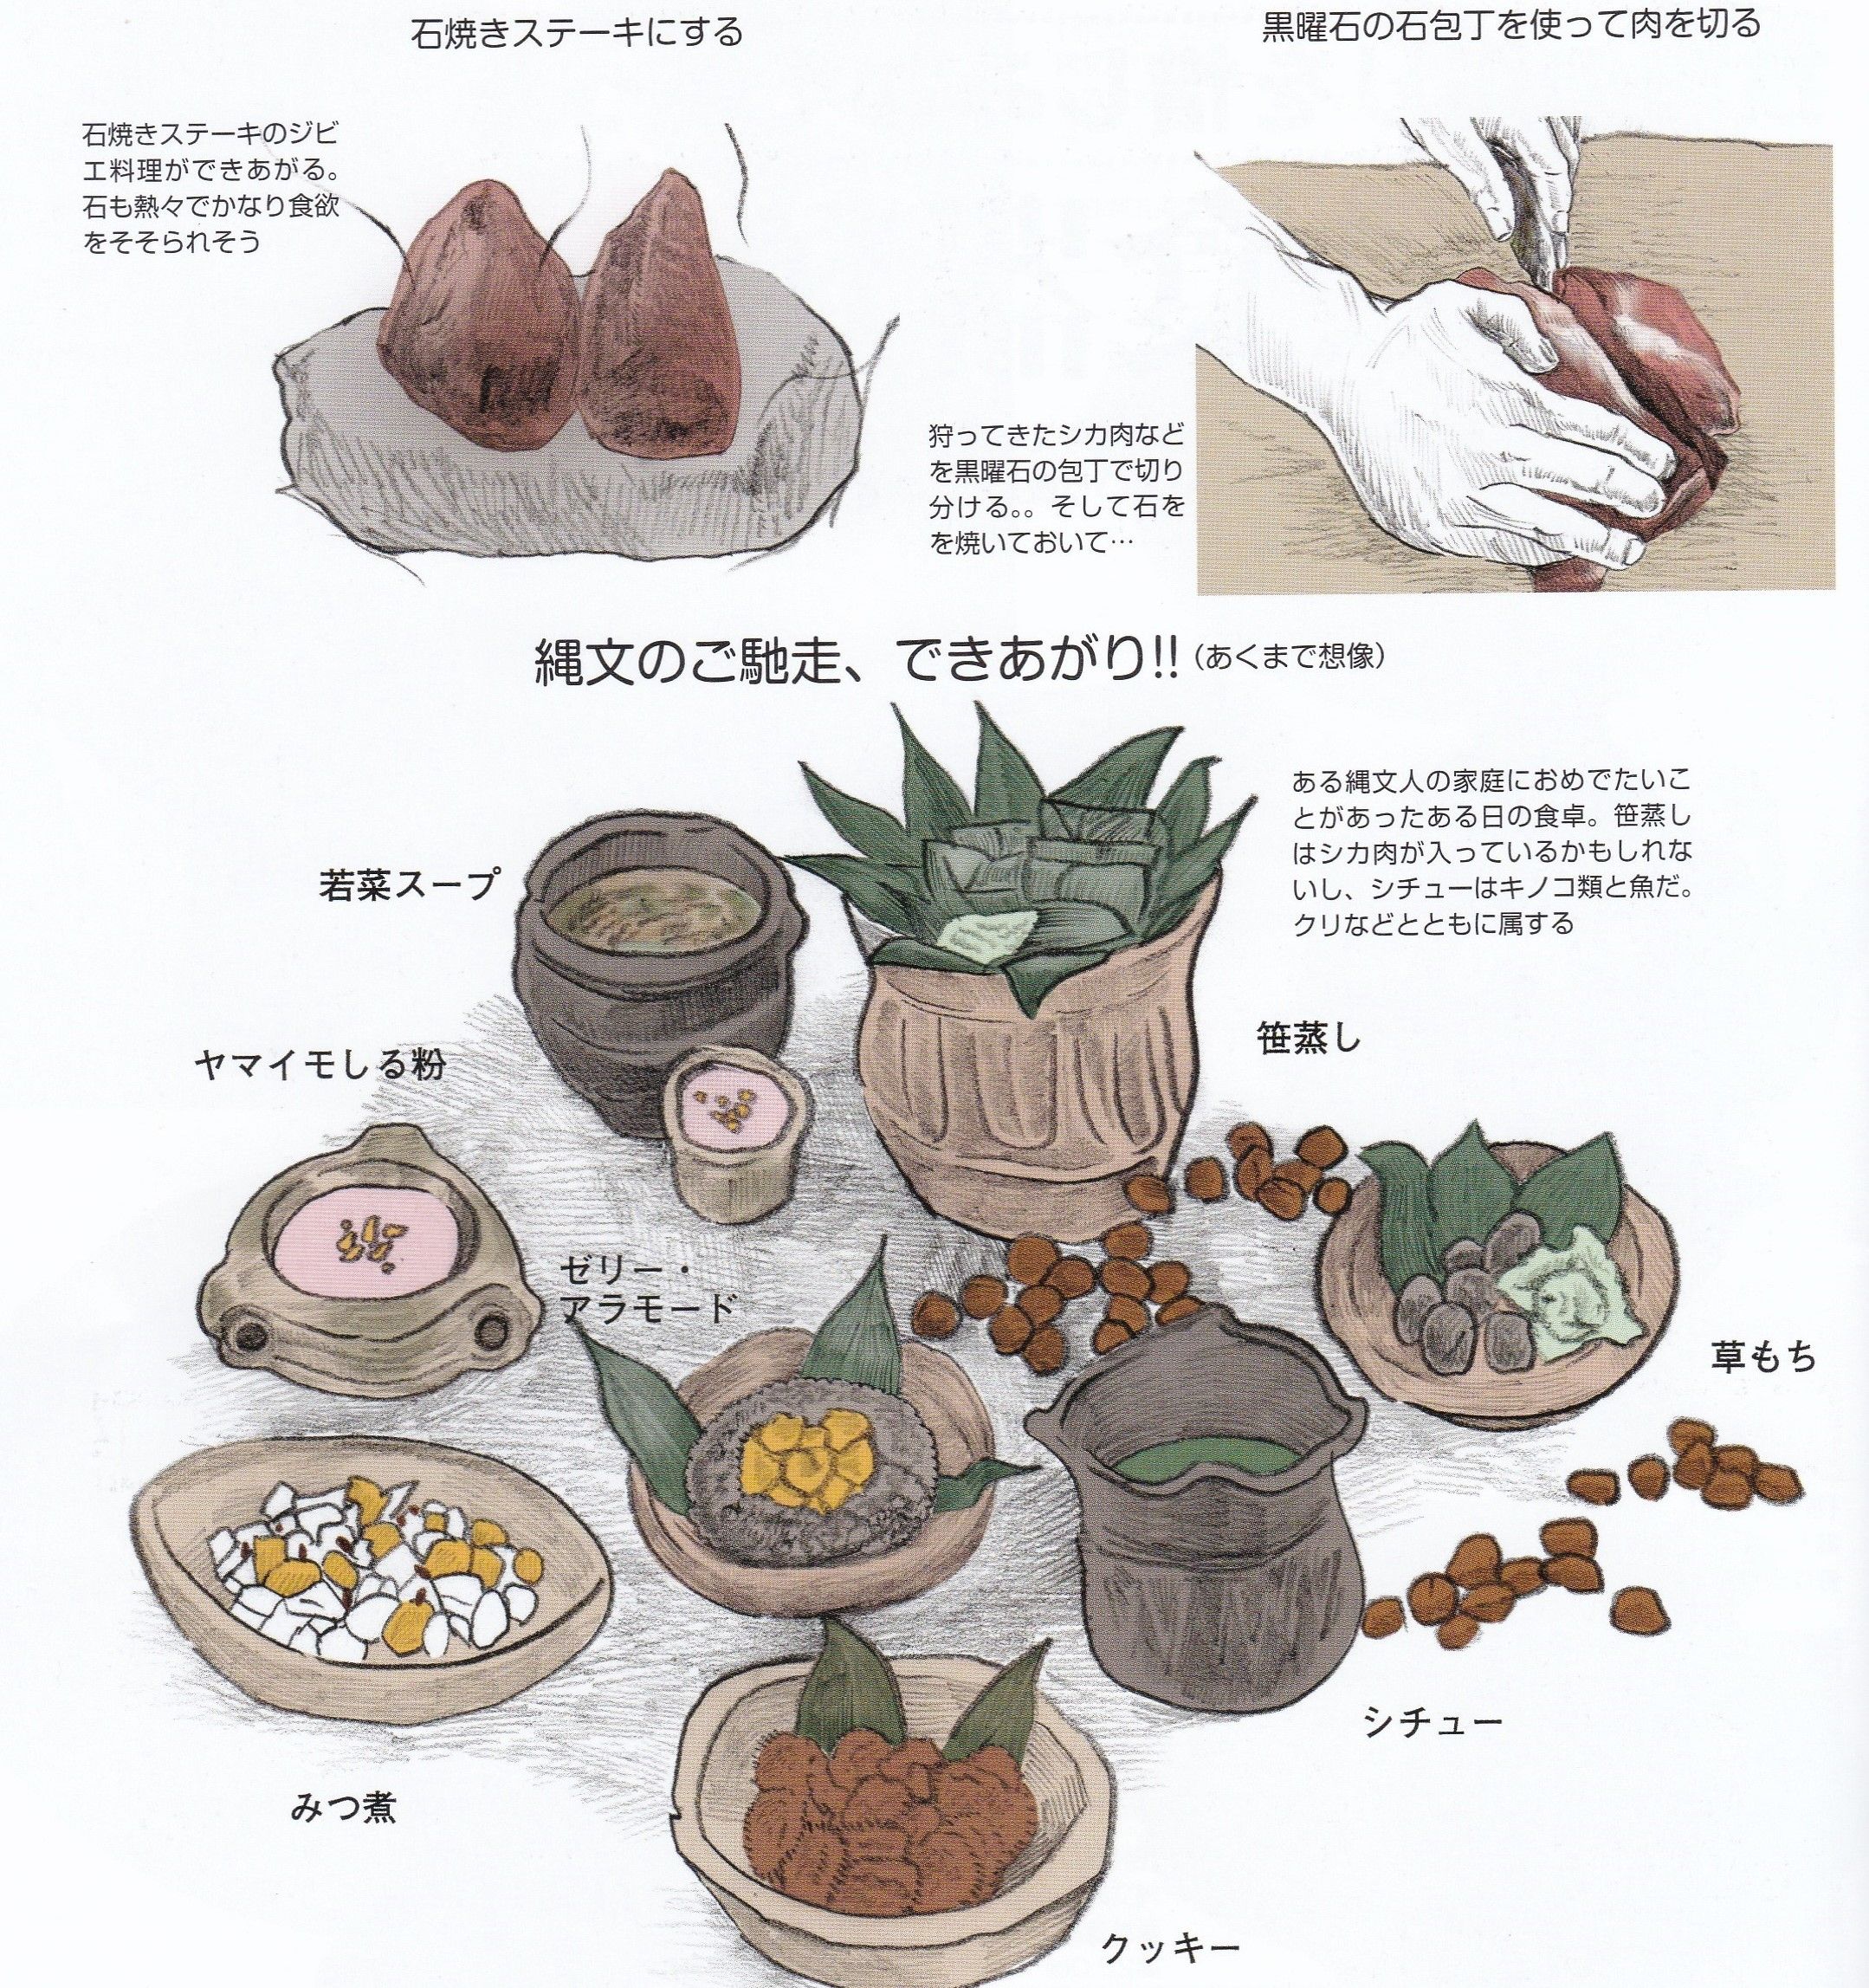 縄文 時代 の 食事 縄文 土器 土器 イラスト イラスト画像集